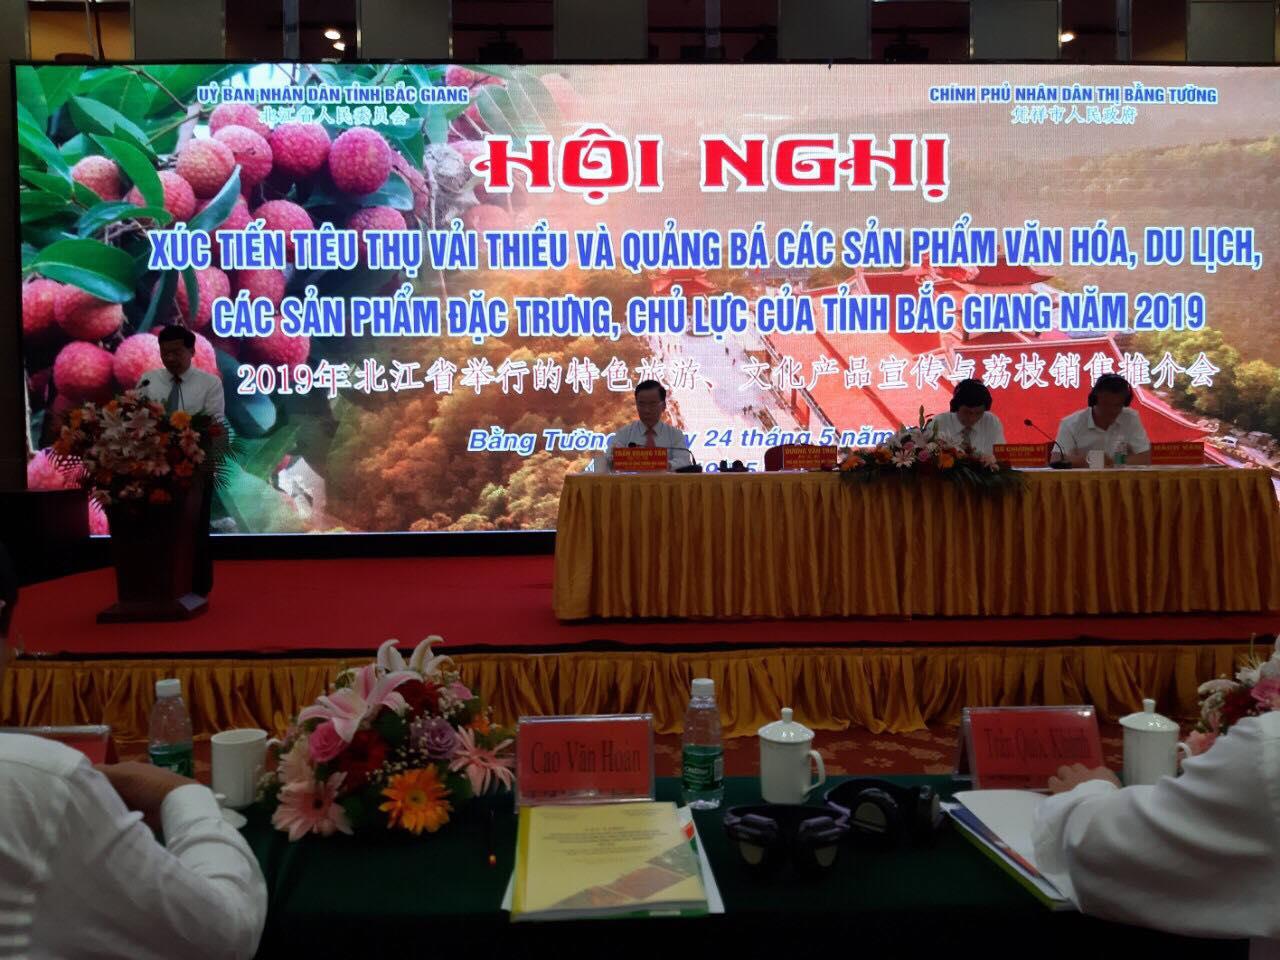 Hội nghị xúc tiến tiêu thụ vải thiều và quảng bá các sản phẩm văn hóa, du lịch, các sản  phẩm  đặc trưng, chủ lực của tỉnh Bắc Giang năm 2019 tại thị Bằng Tường, Quảng Tây, Trung Quốc